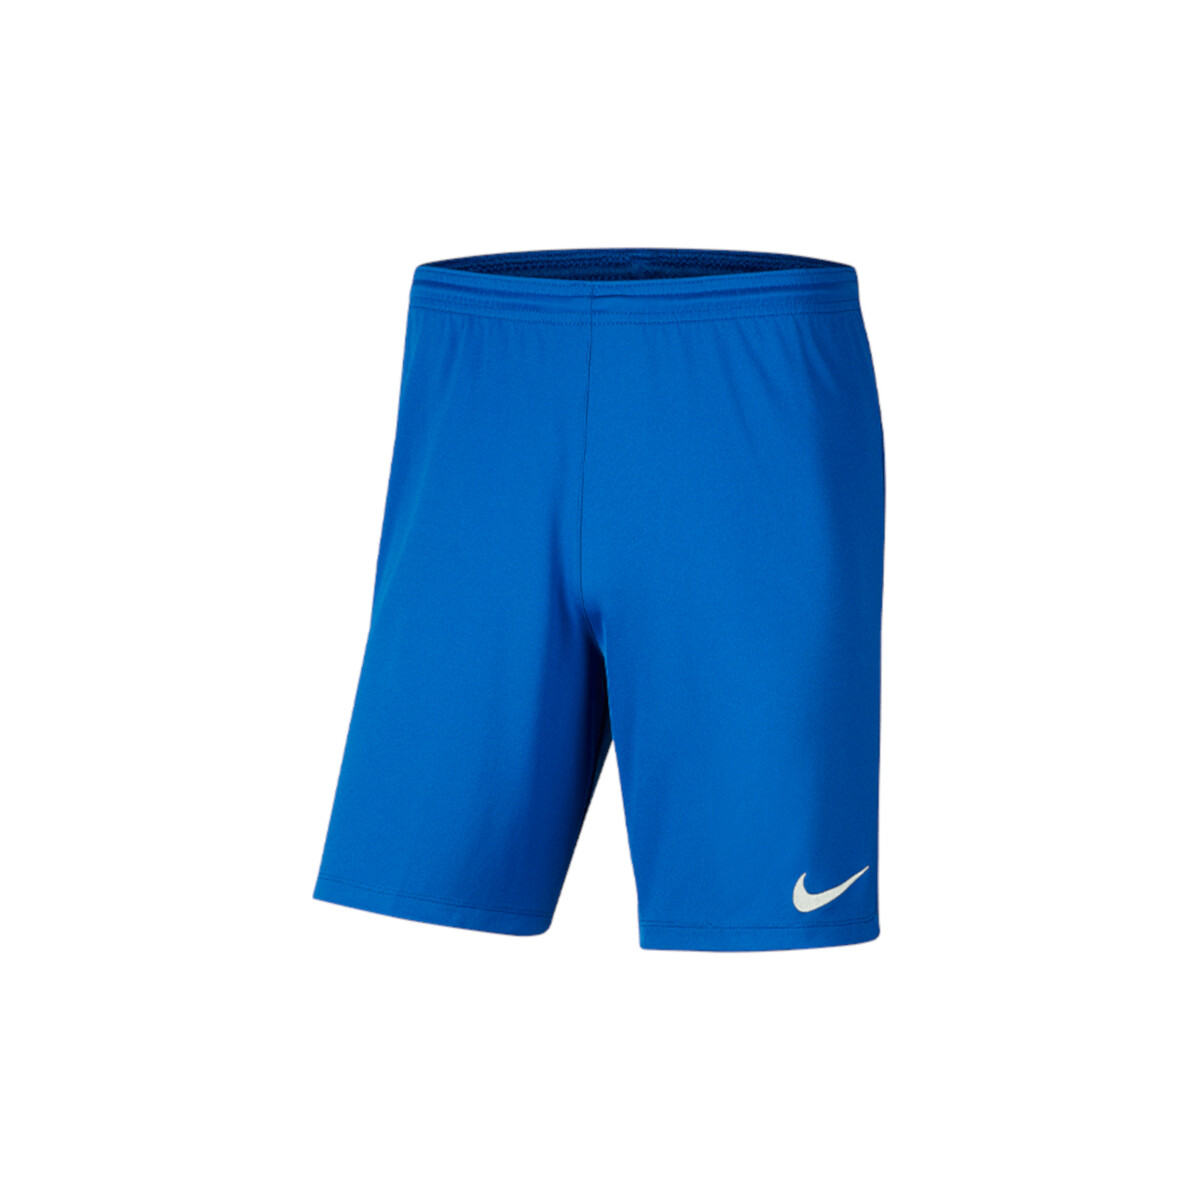 vaatteet Miehet Caprihousut Nike Park III Shorts Sininen